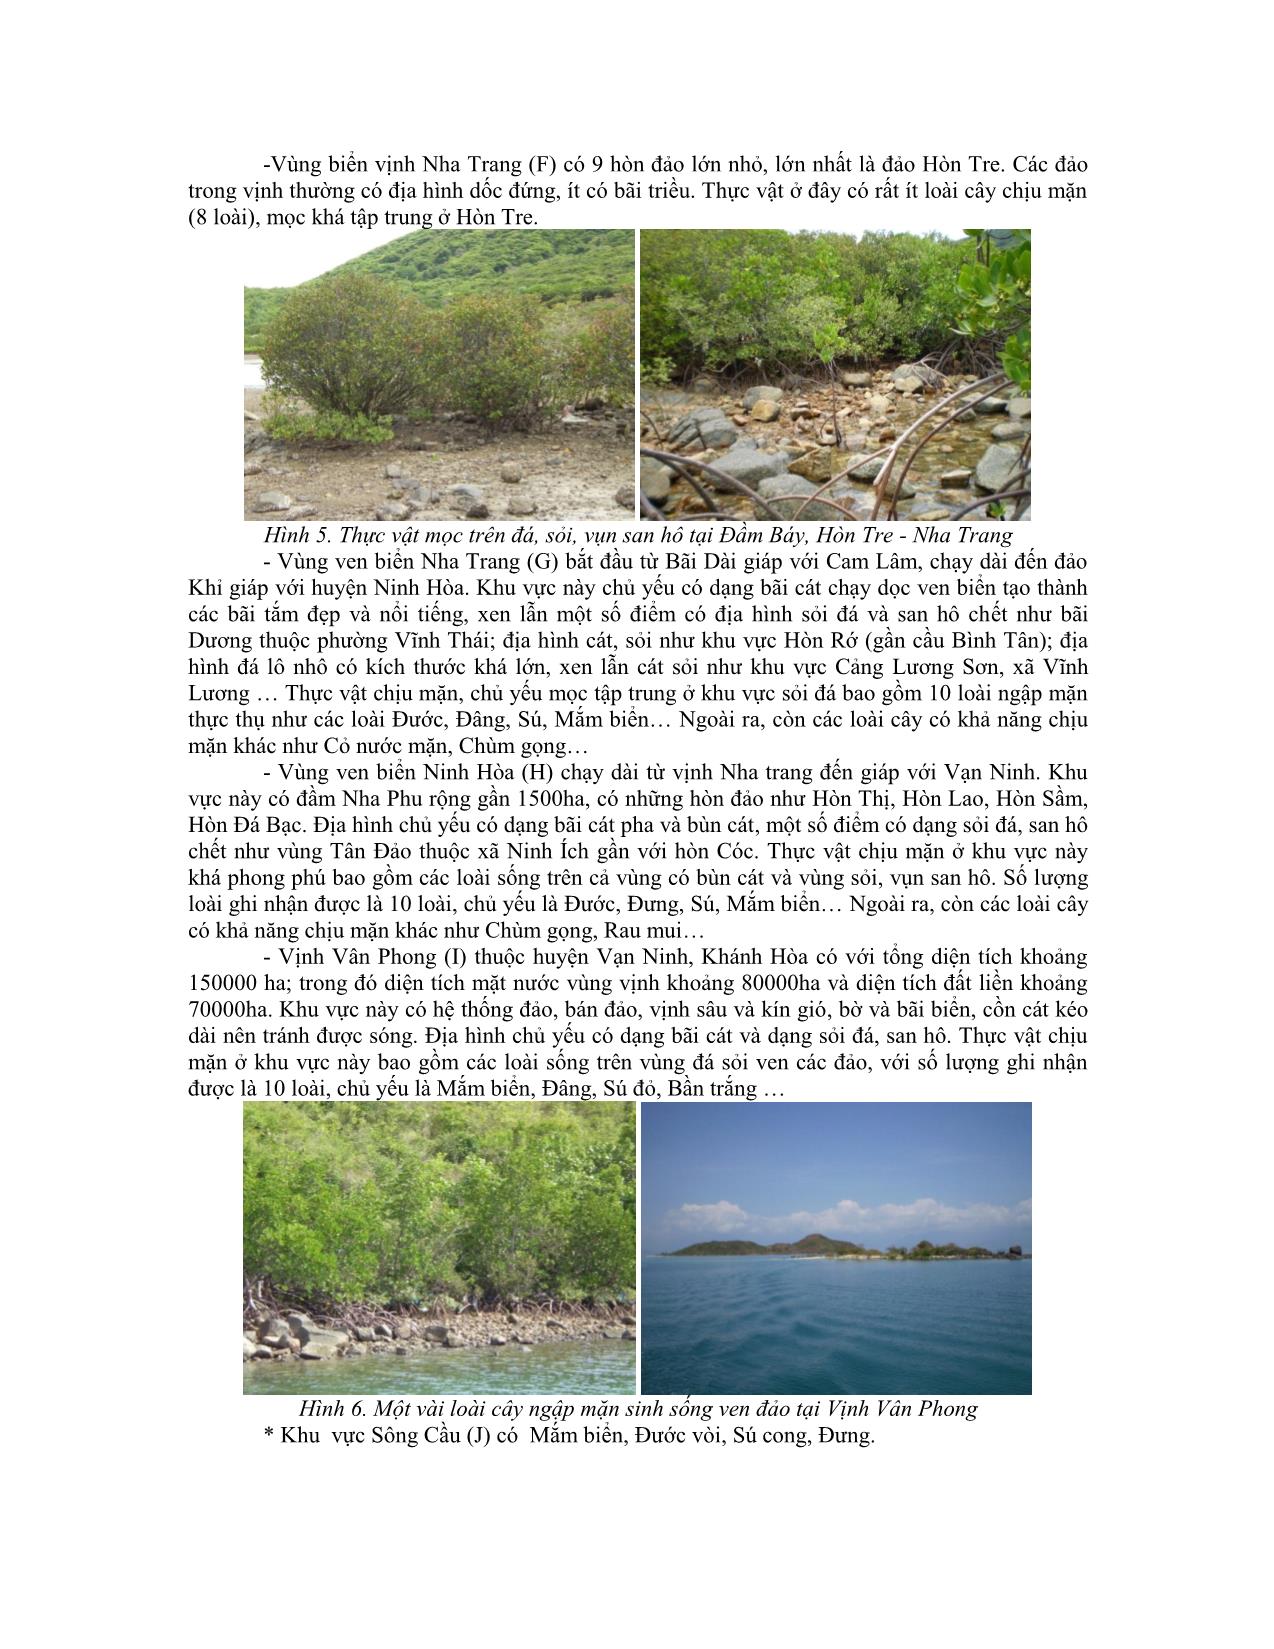 Nghiên cứu thành phần loài và phân bố cây ngập mặn làm cơ sở chọn loài cây trồng trên nền san hô ngập nước ven biển, đảo các tỉnh duyên hải Nam Trung Bộ trang 7